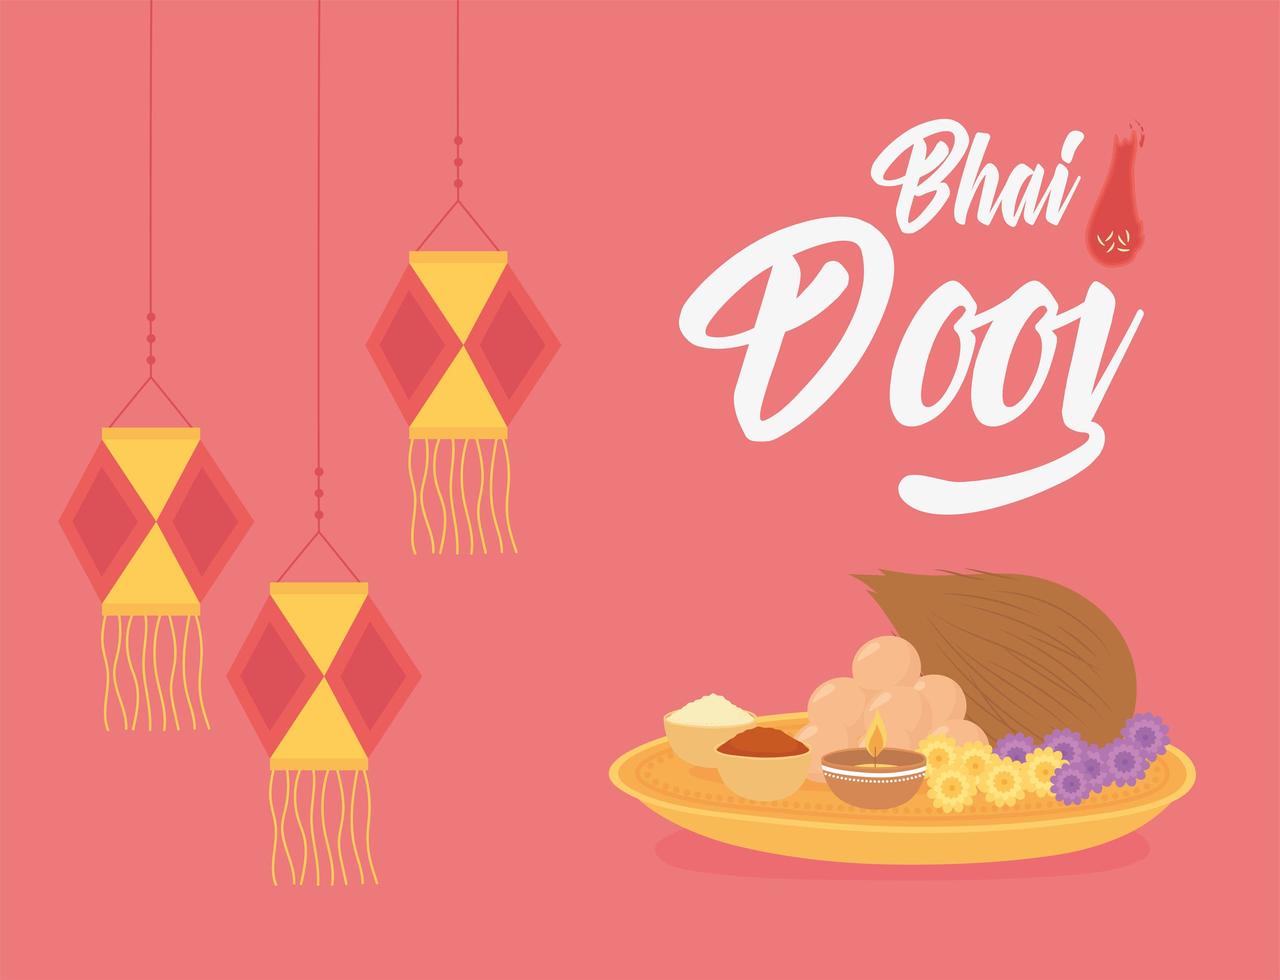 gelukkige bhai dooj. hangende lantaarns en traditionele gerechten vector